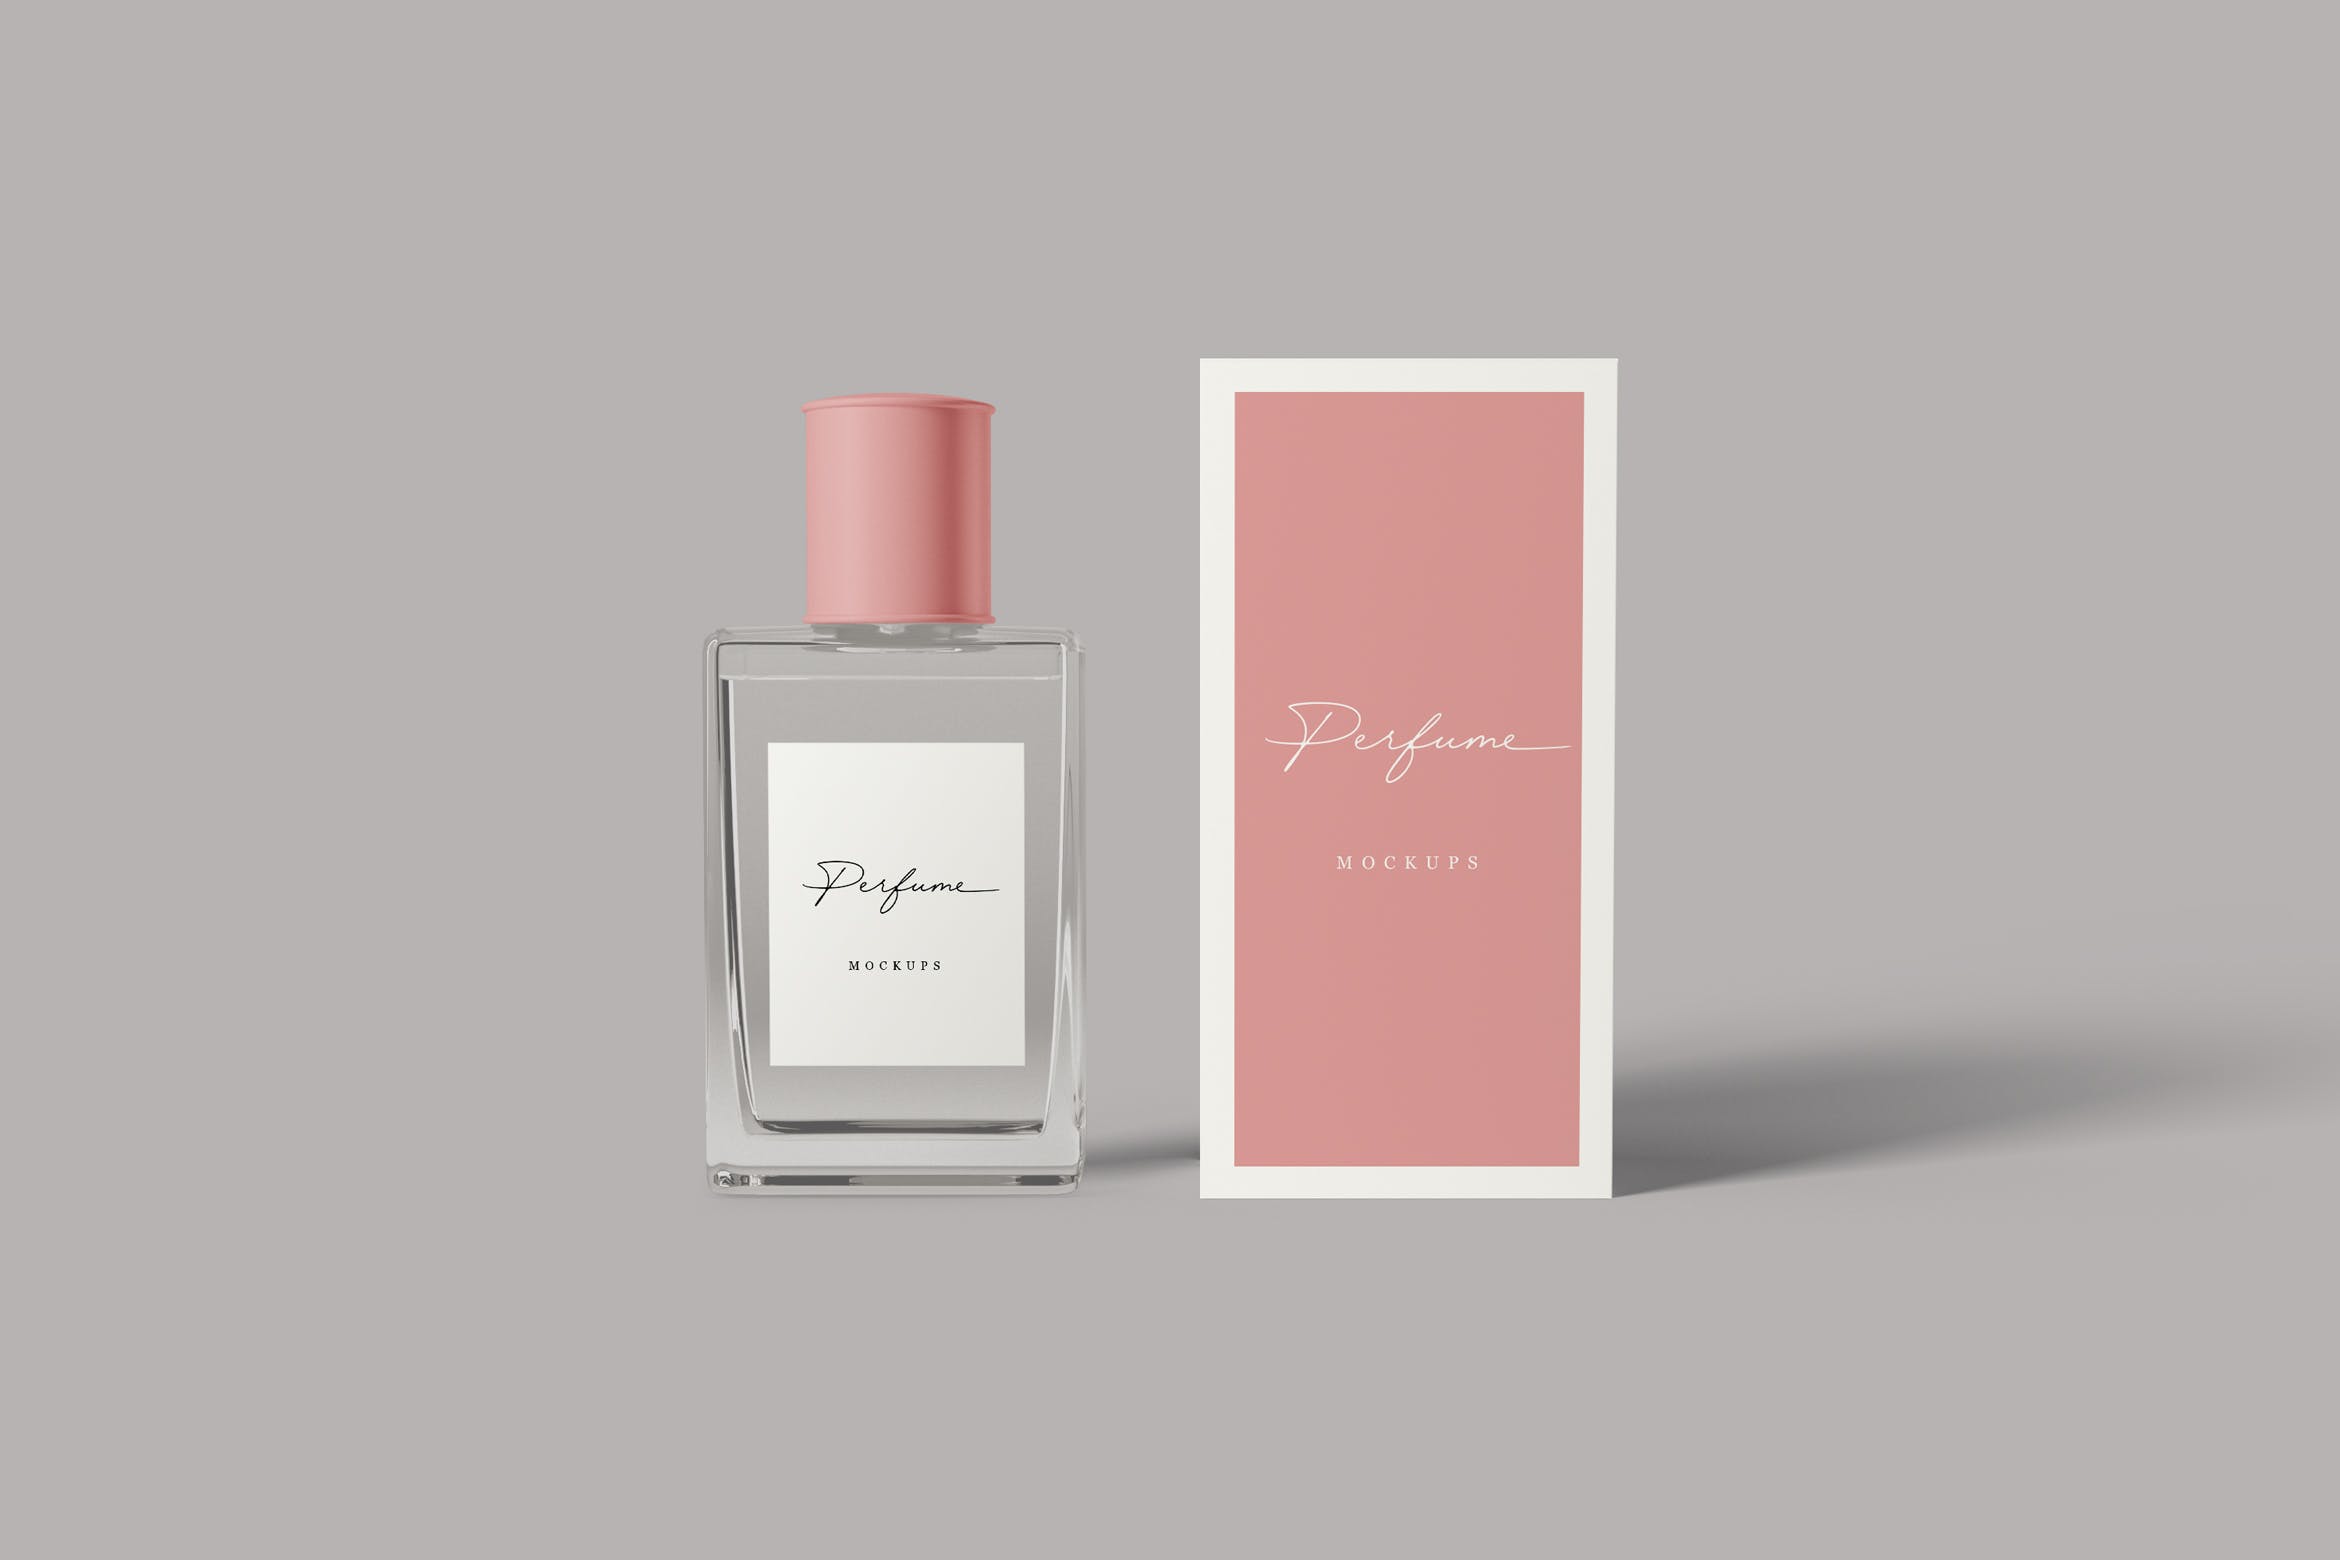 香水瓶外观设计图第一素材精选 Perfume Mockups插图